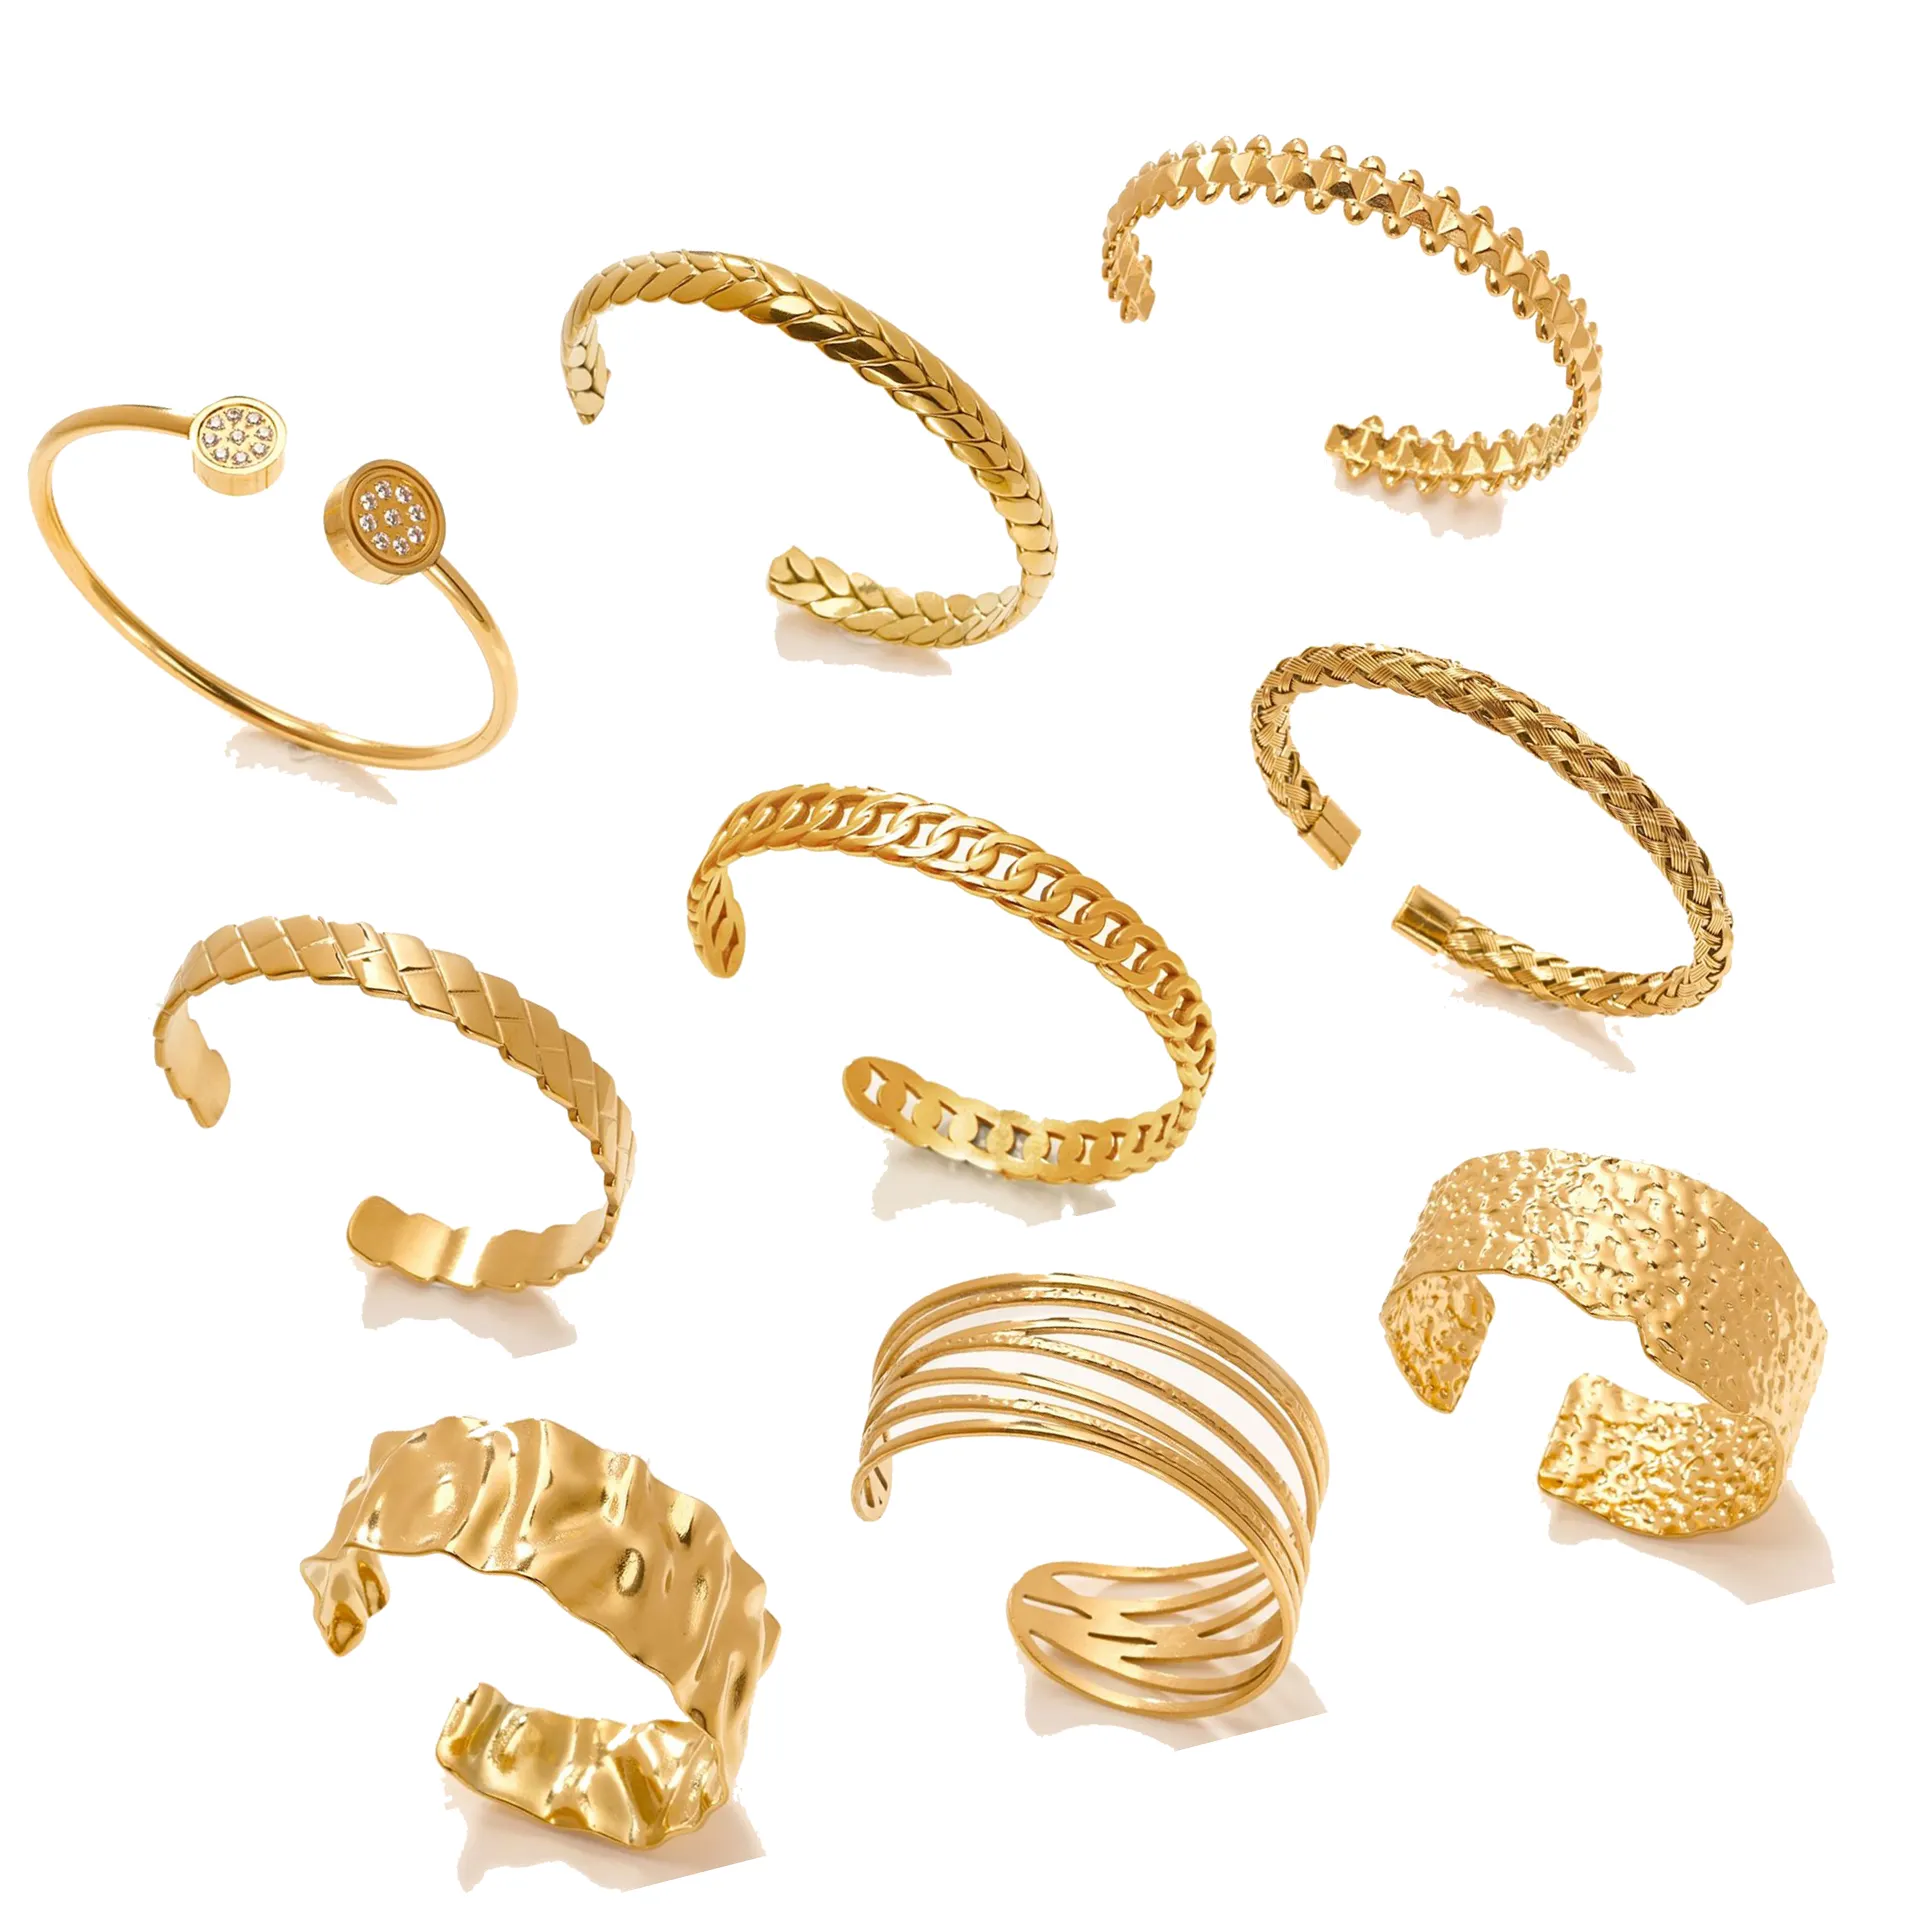 Braccialetti per ragazze gioielli di moda braccialetti in acciaio inox braccialetti donne gioielli e accessori